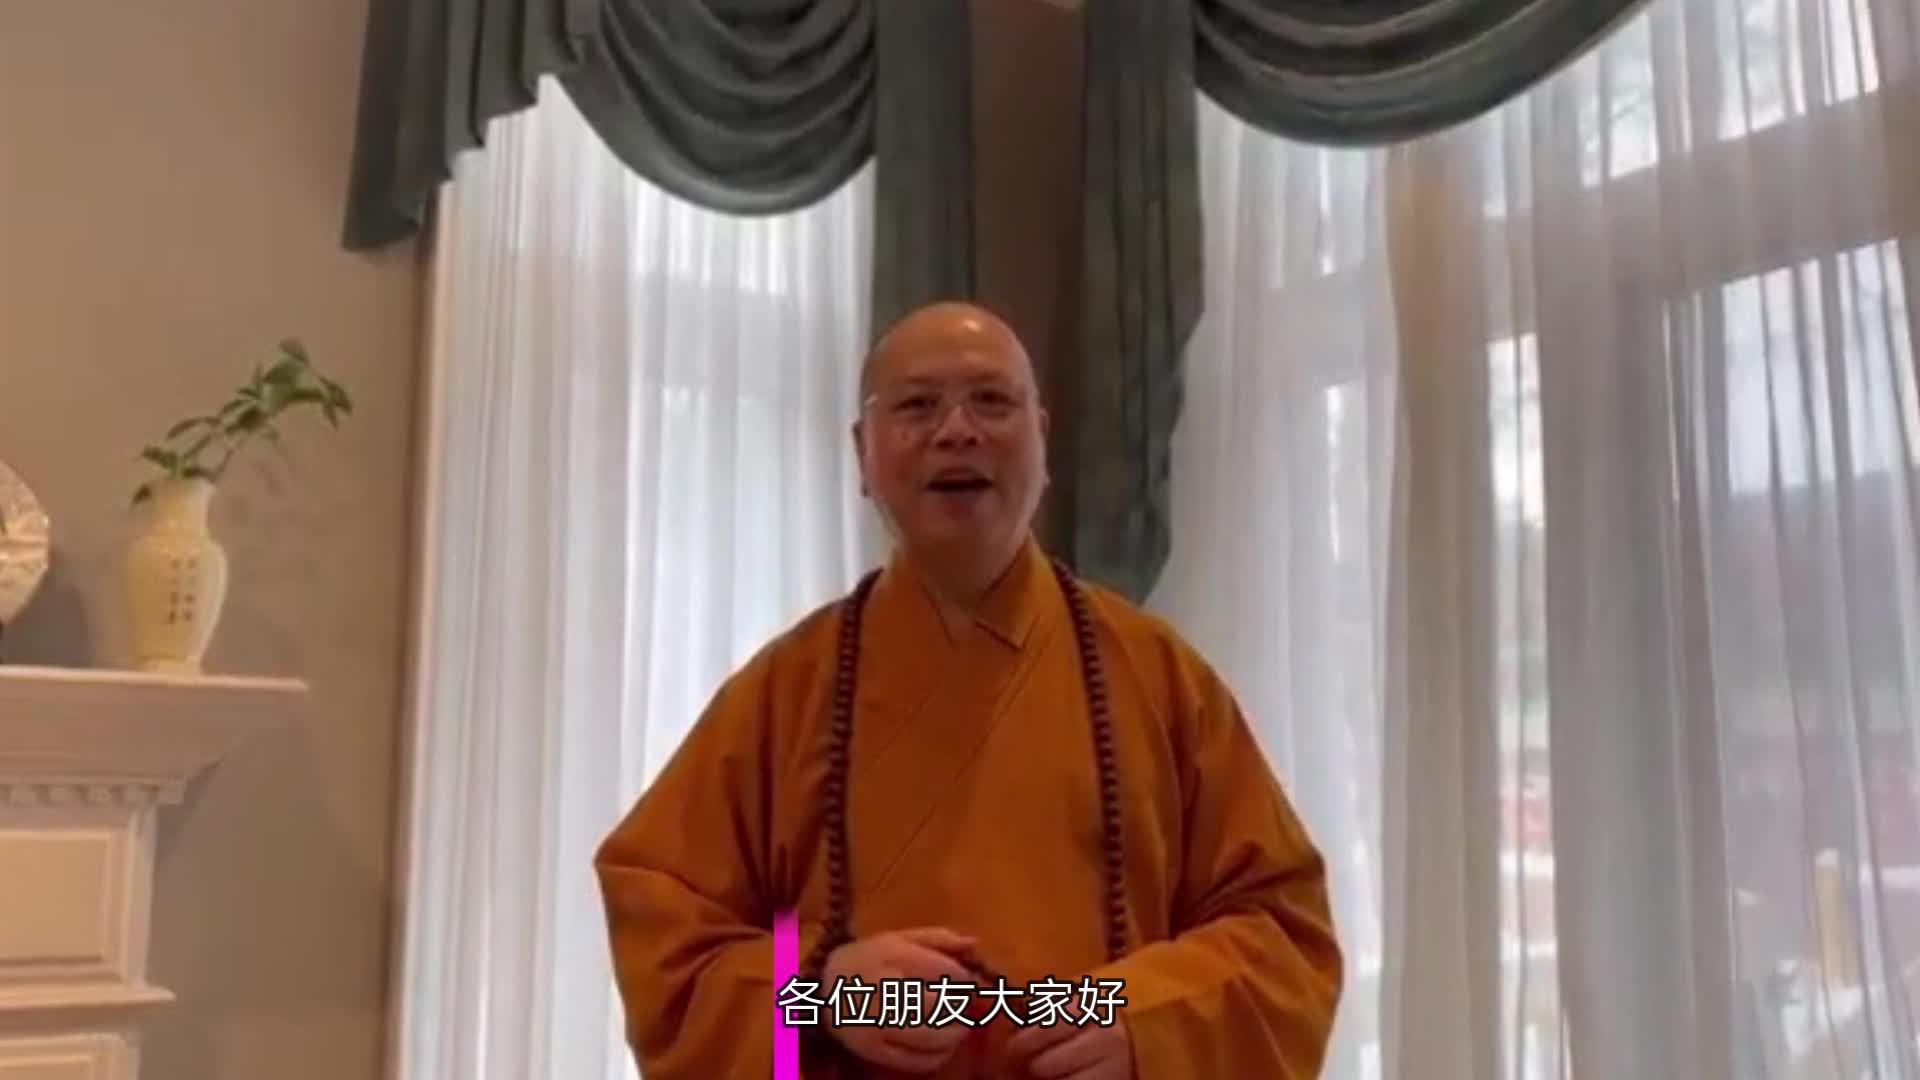 加拿大佛教会会长达义法师祝福北京冬奥会圆满成功